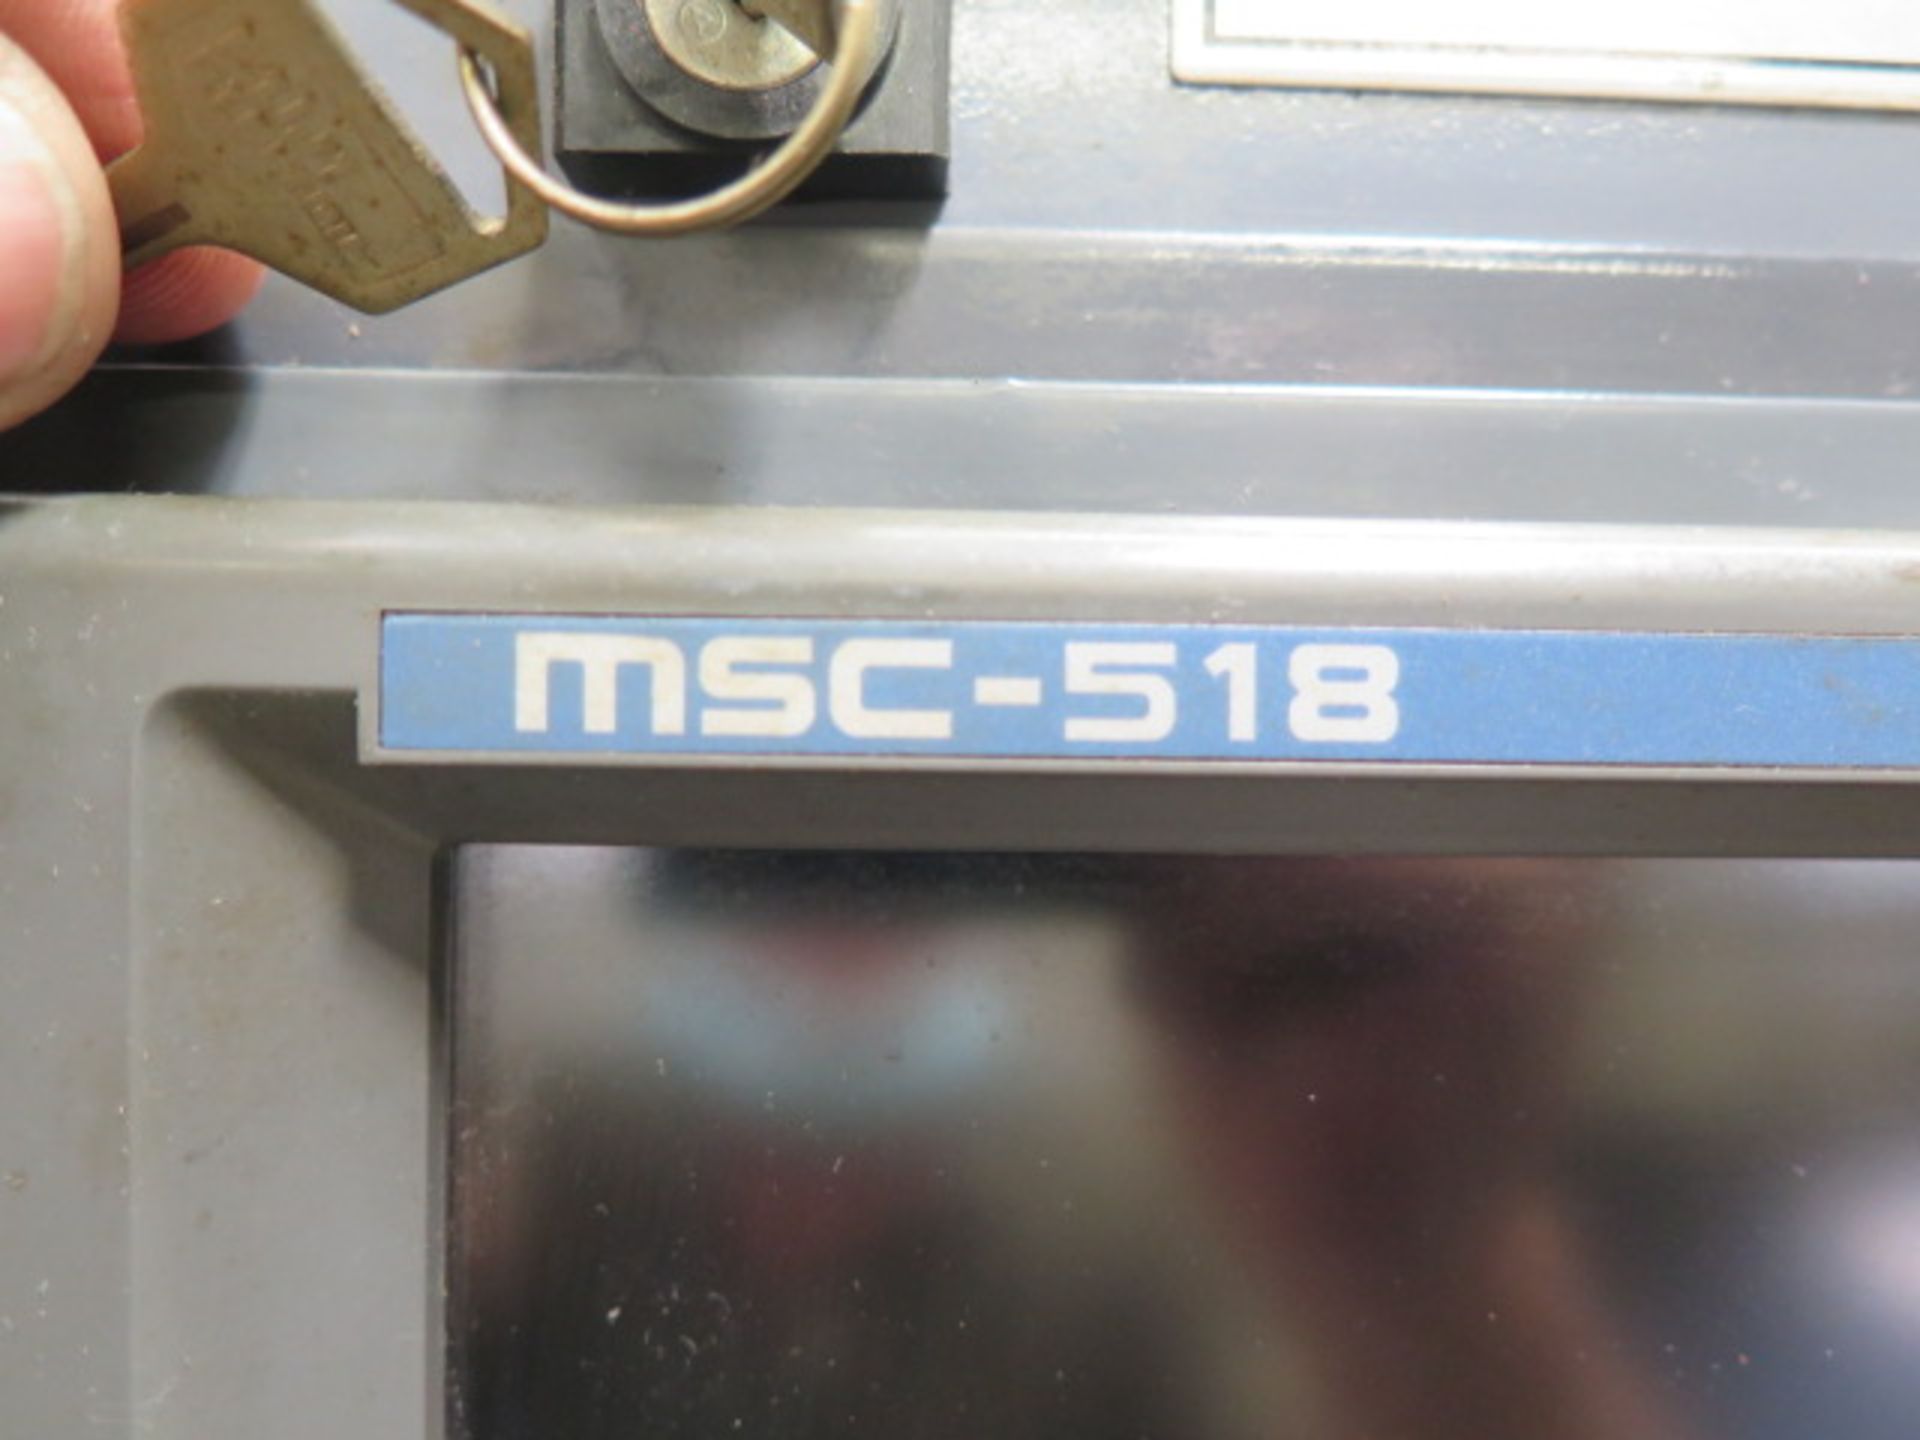 1996 Mori Seiki SL-150 CNC Turning Center s/n 381 w/ Mori Seiki MSC-518 Controls, SOLD AS IS - Image 8 of 30